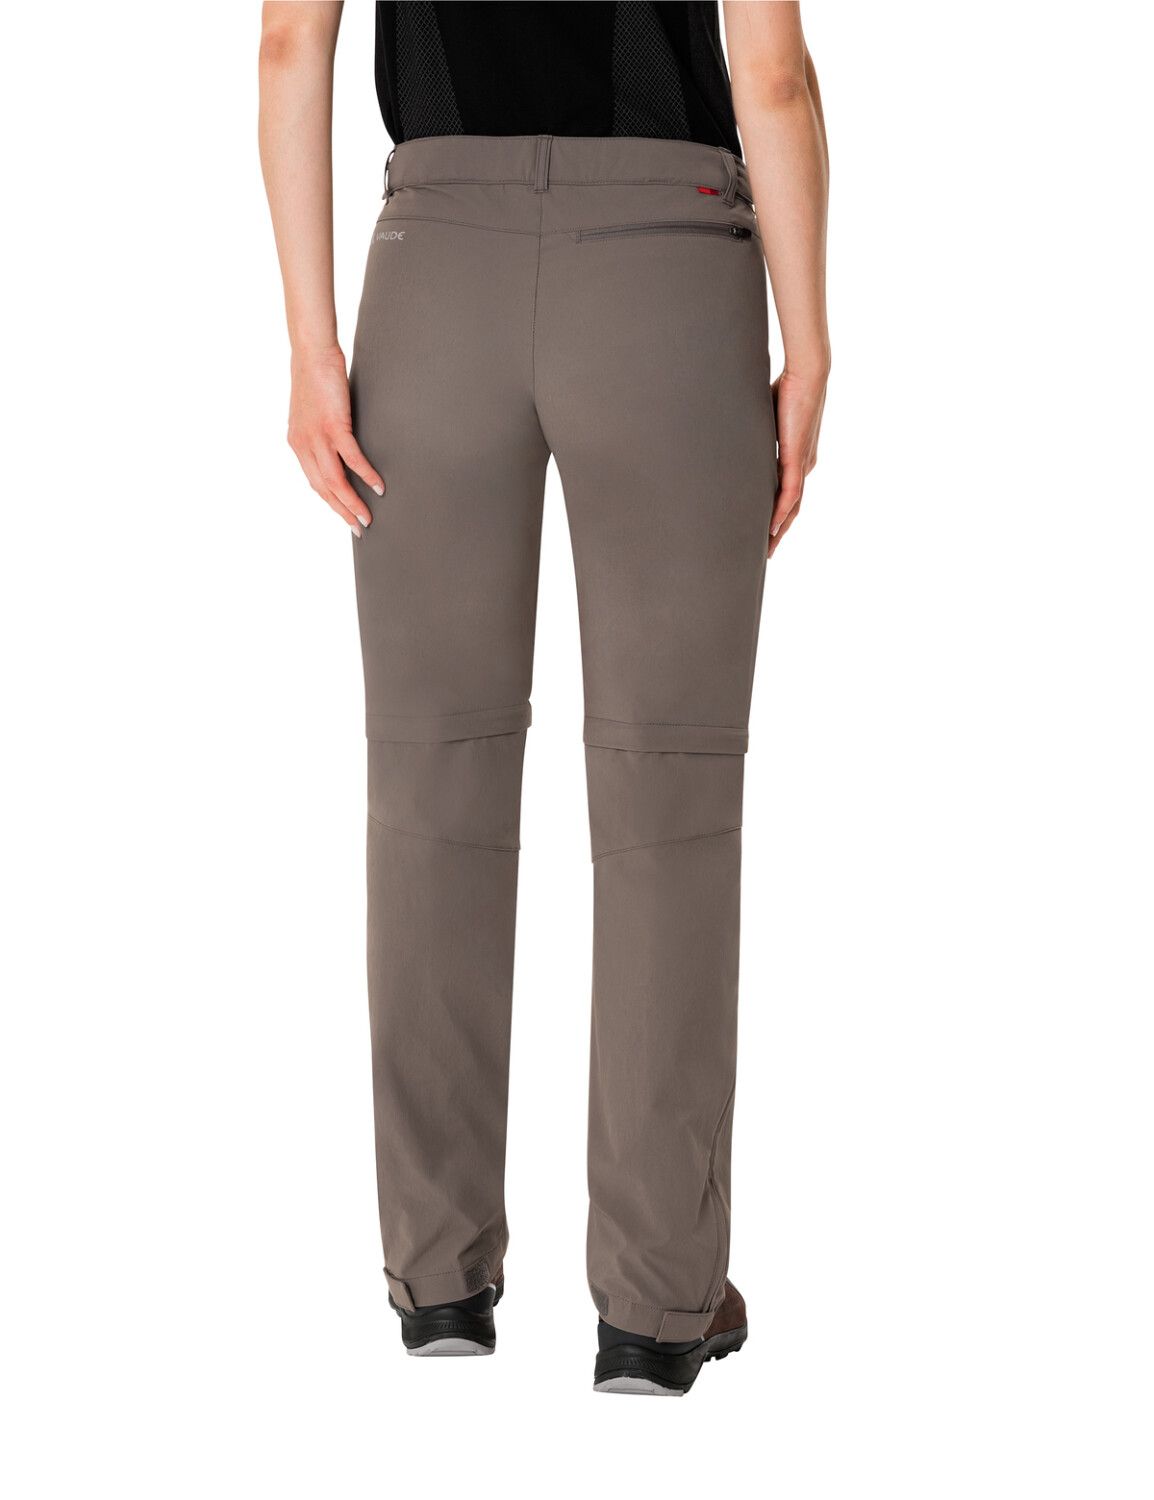 VAUDE Women's Farley Stretch ZO T-Zip Pants (Bild 32)